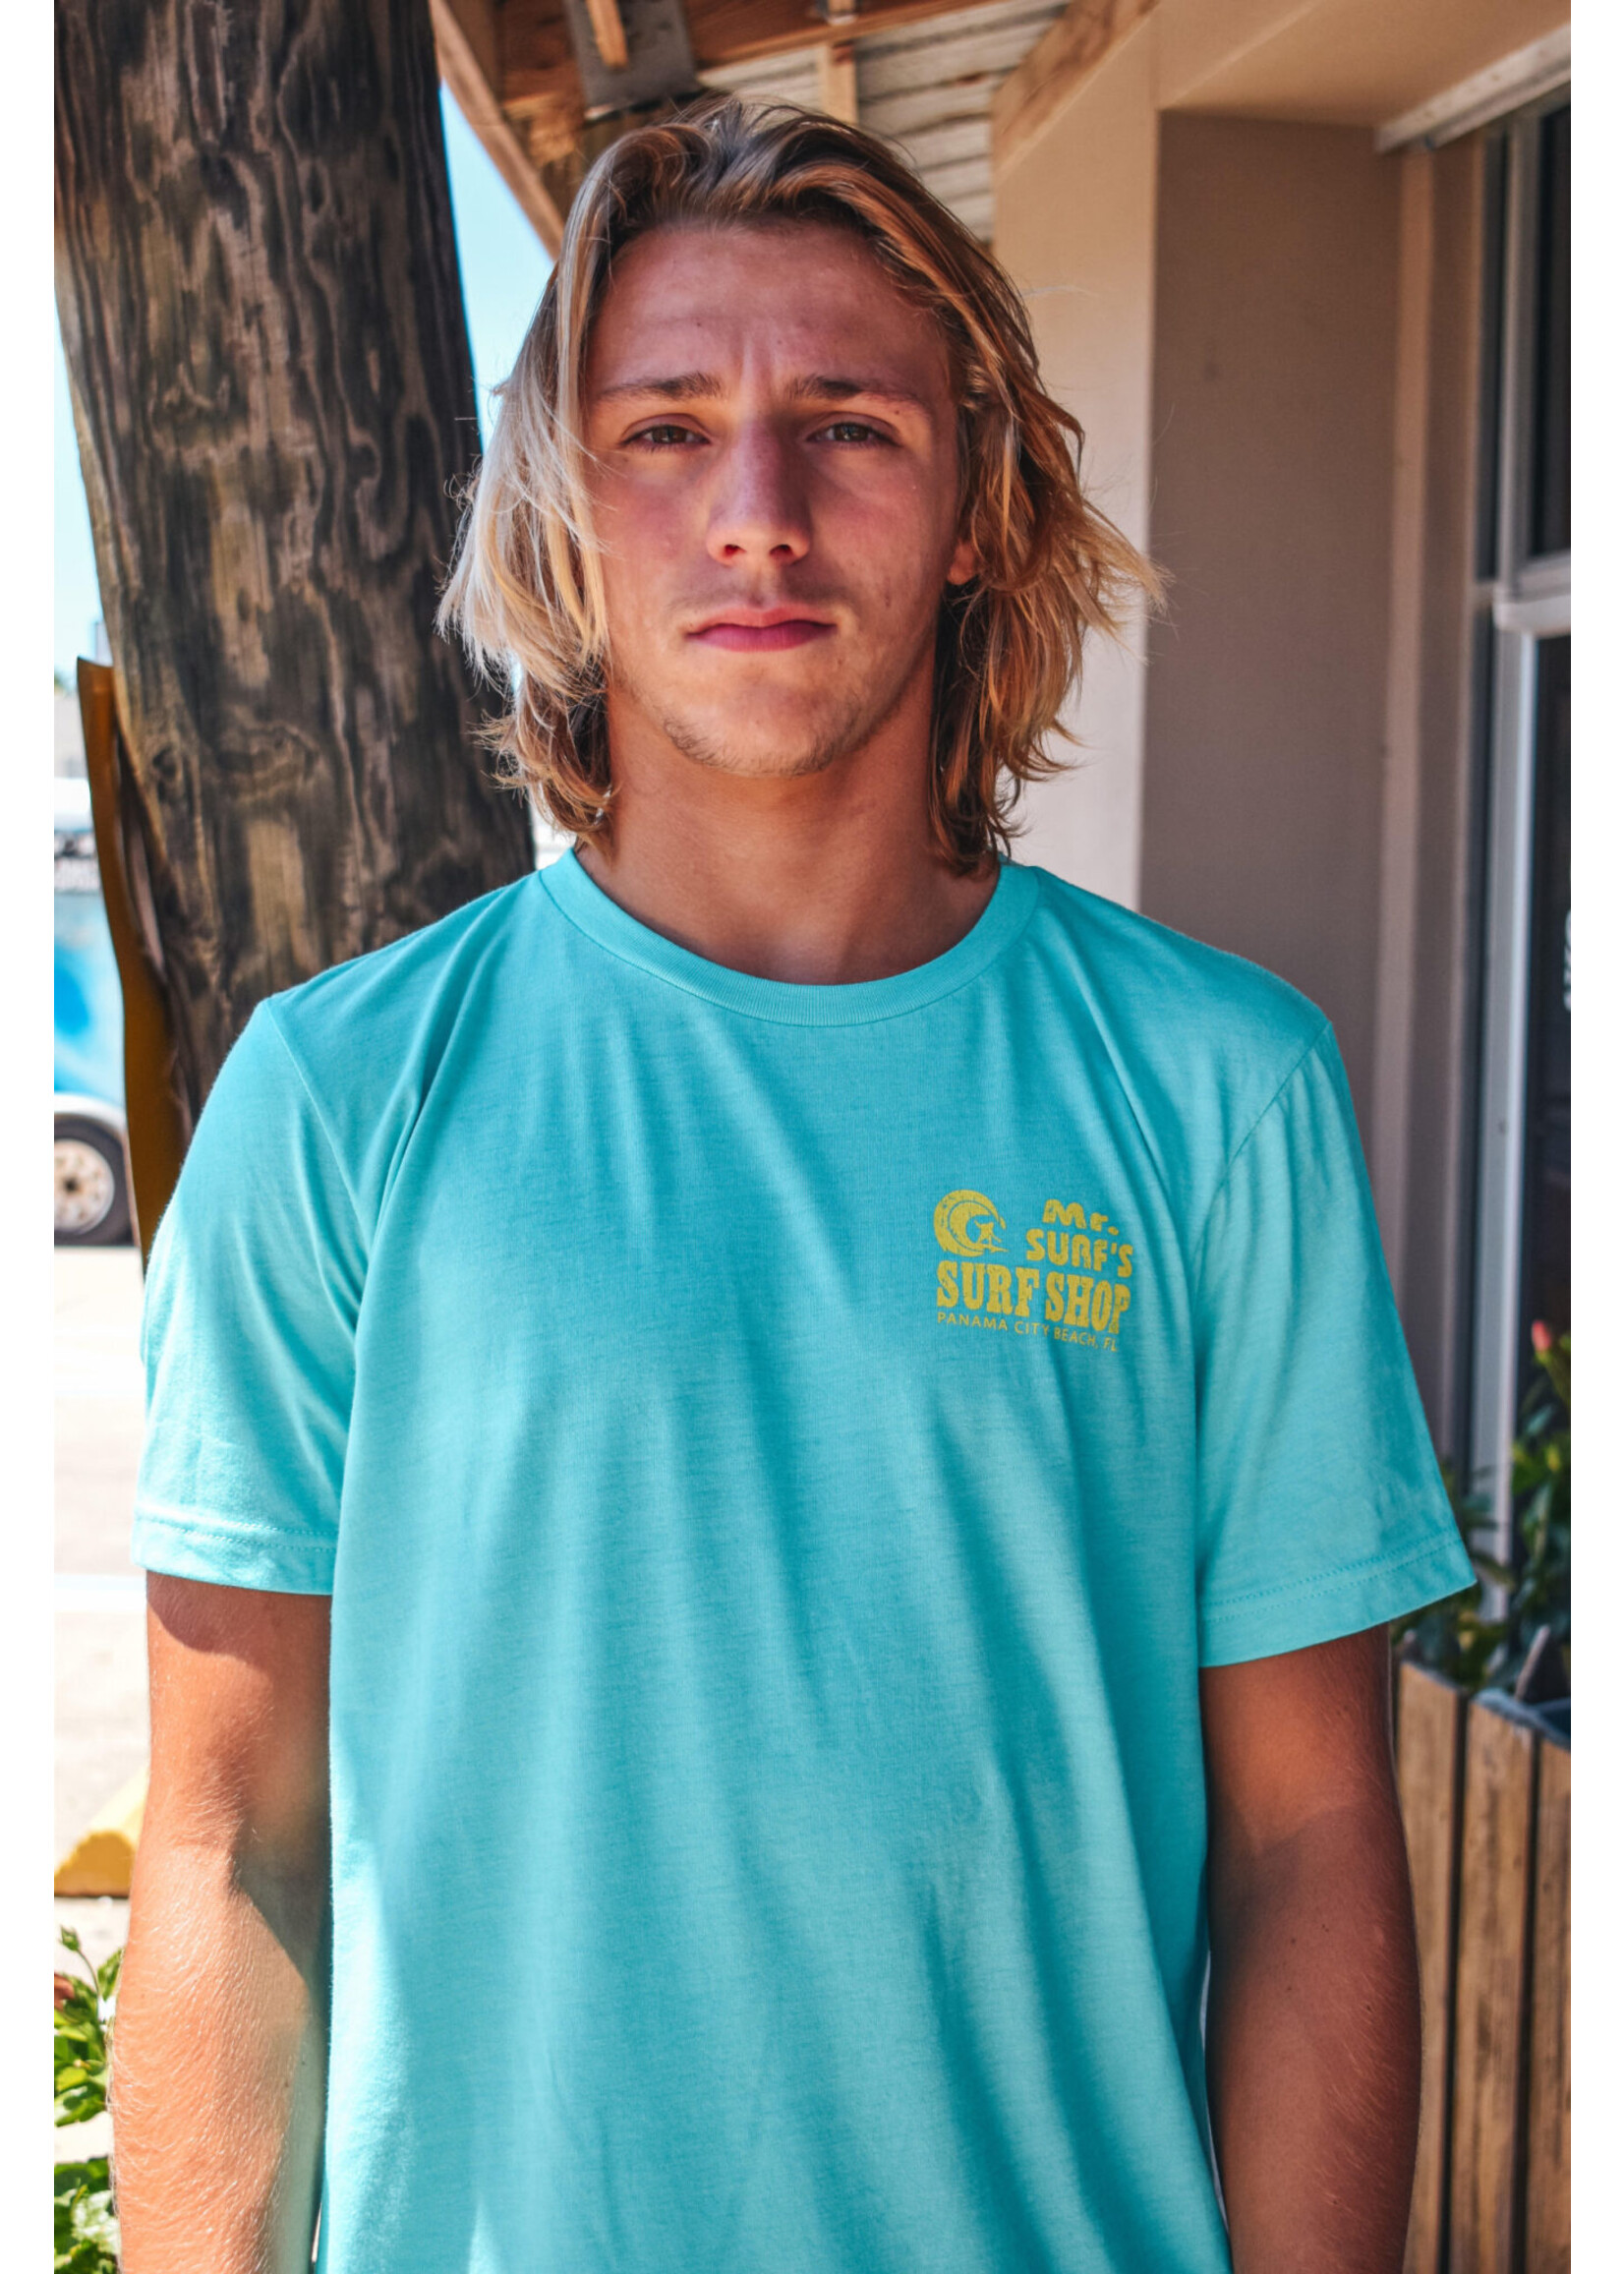 Mr Surfs Mr Surfs The Wave T-Shirt